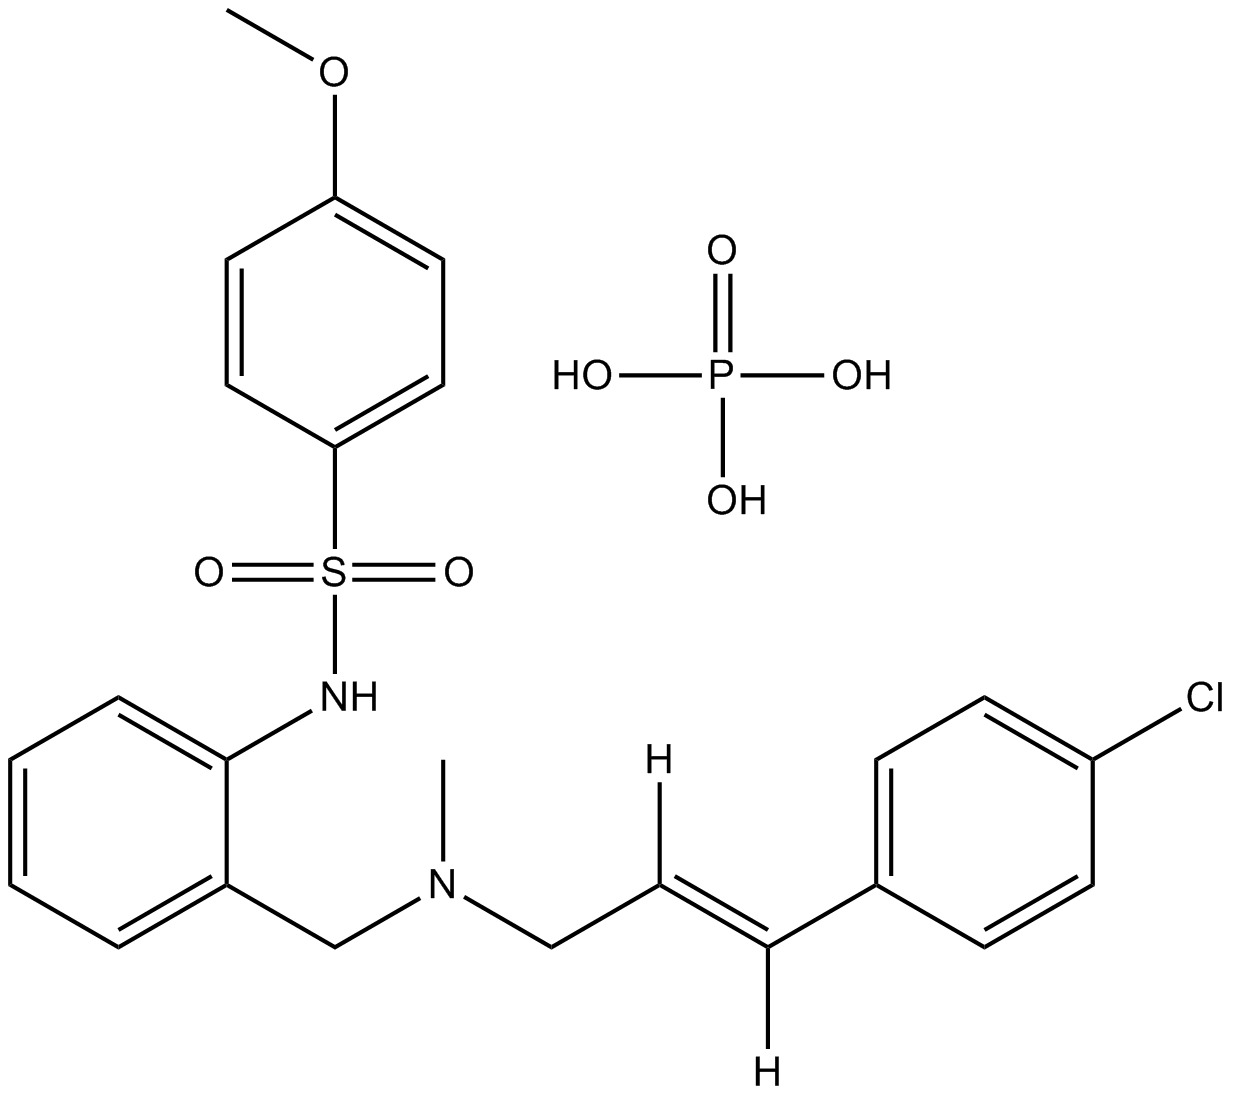 KN-92 phosphate